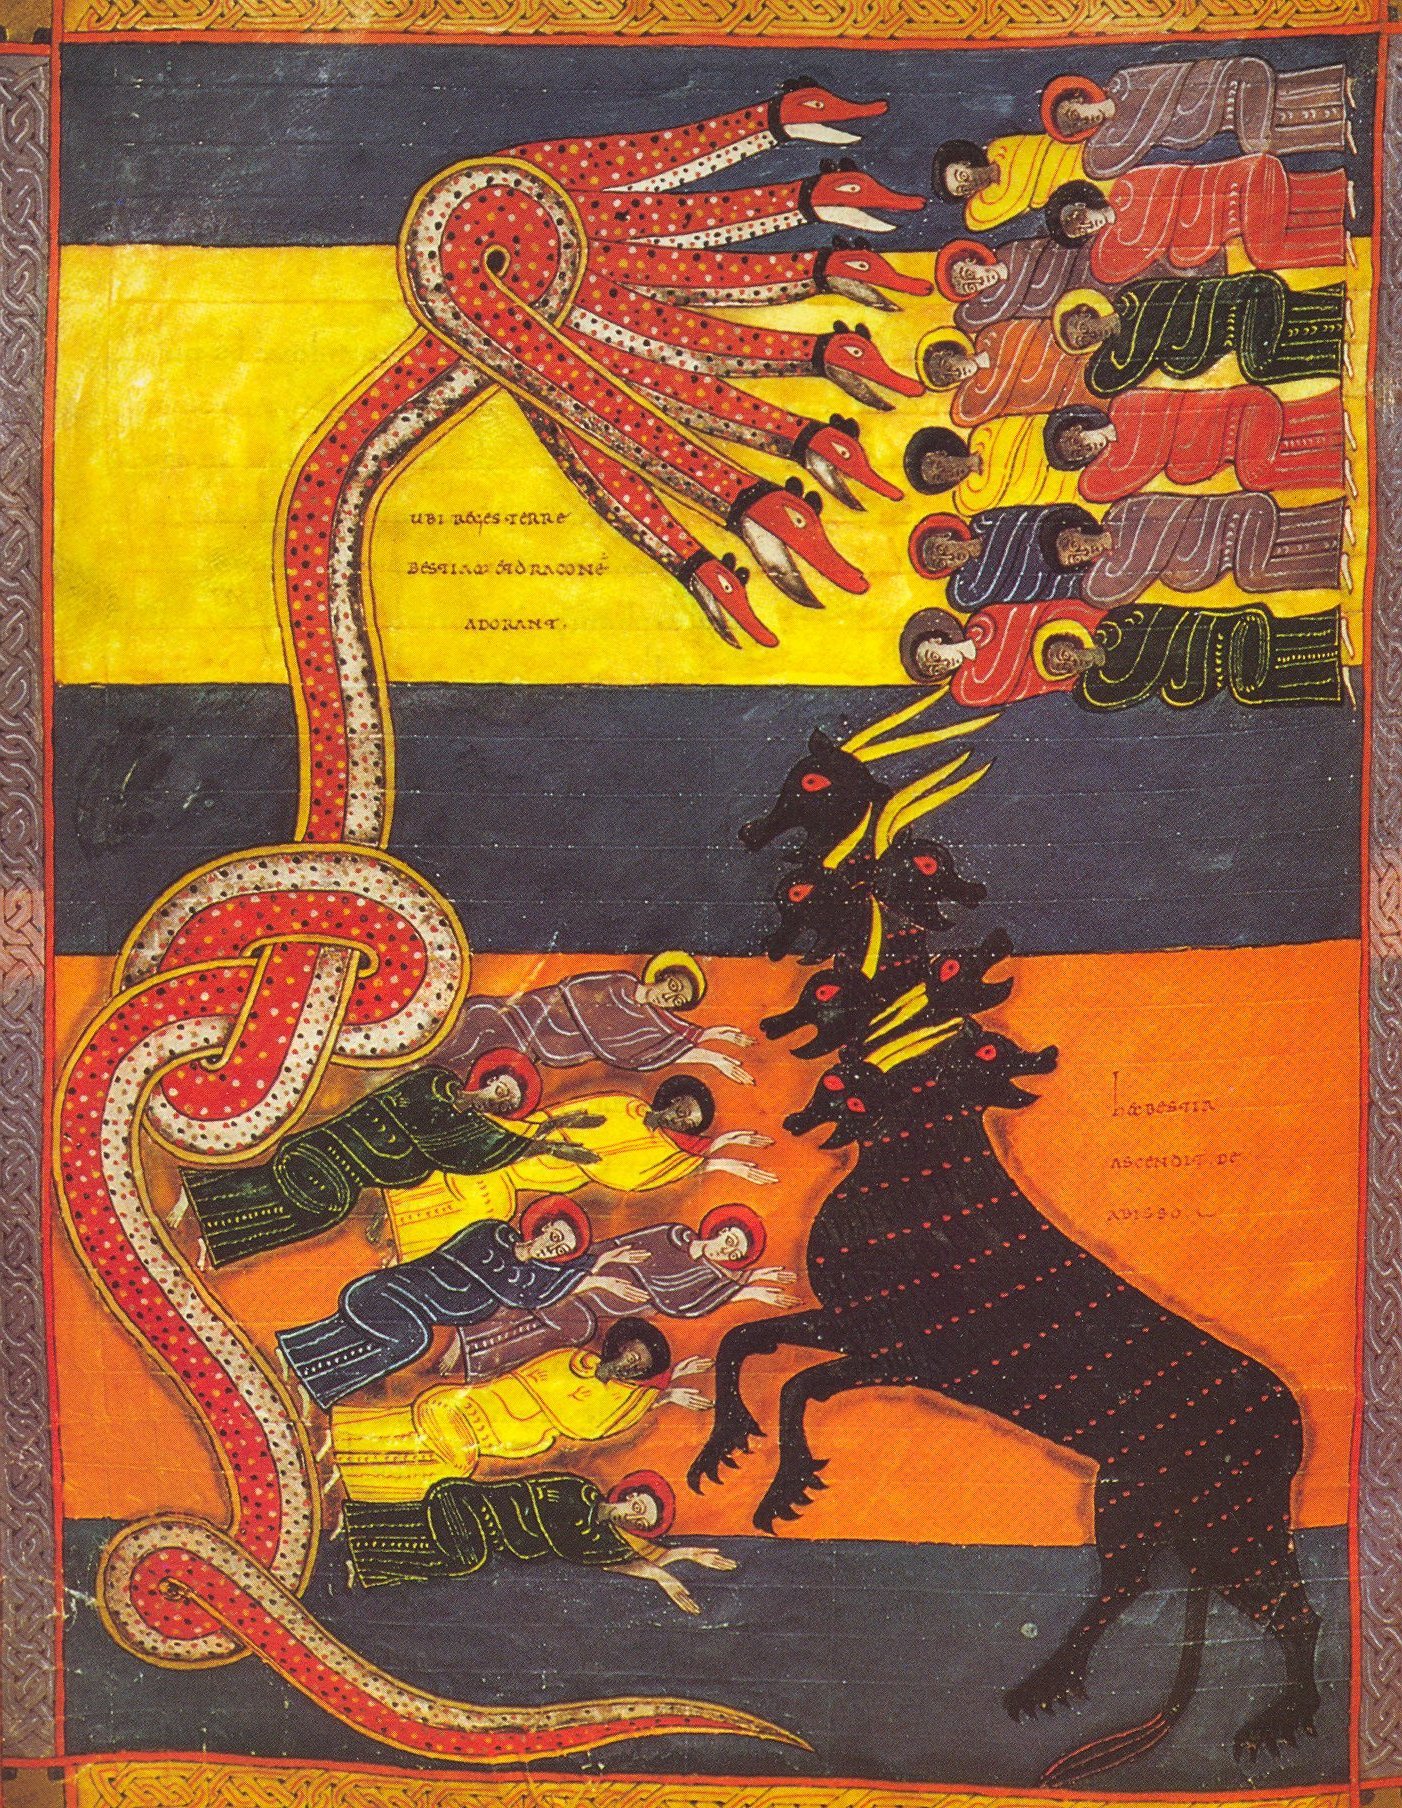 Beatus de Facundus – Le Dragon donne sa puissance à la Bête (Ap 13)